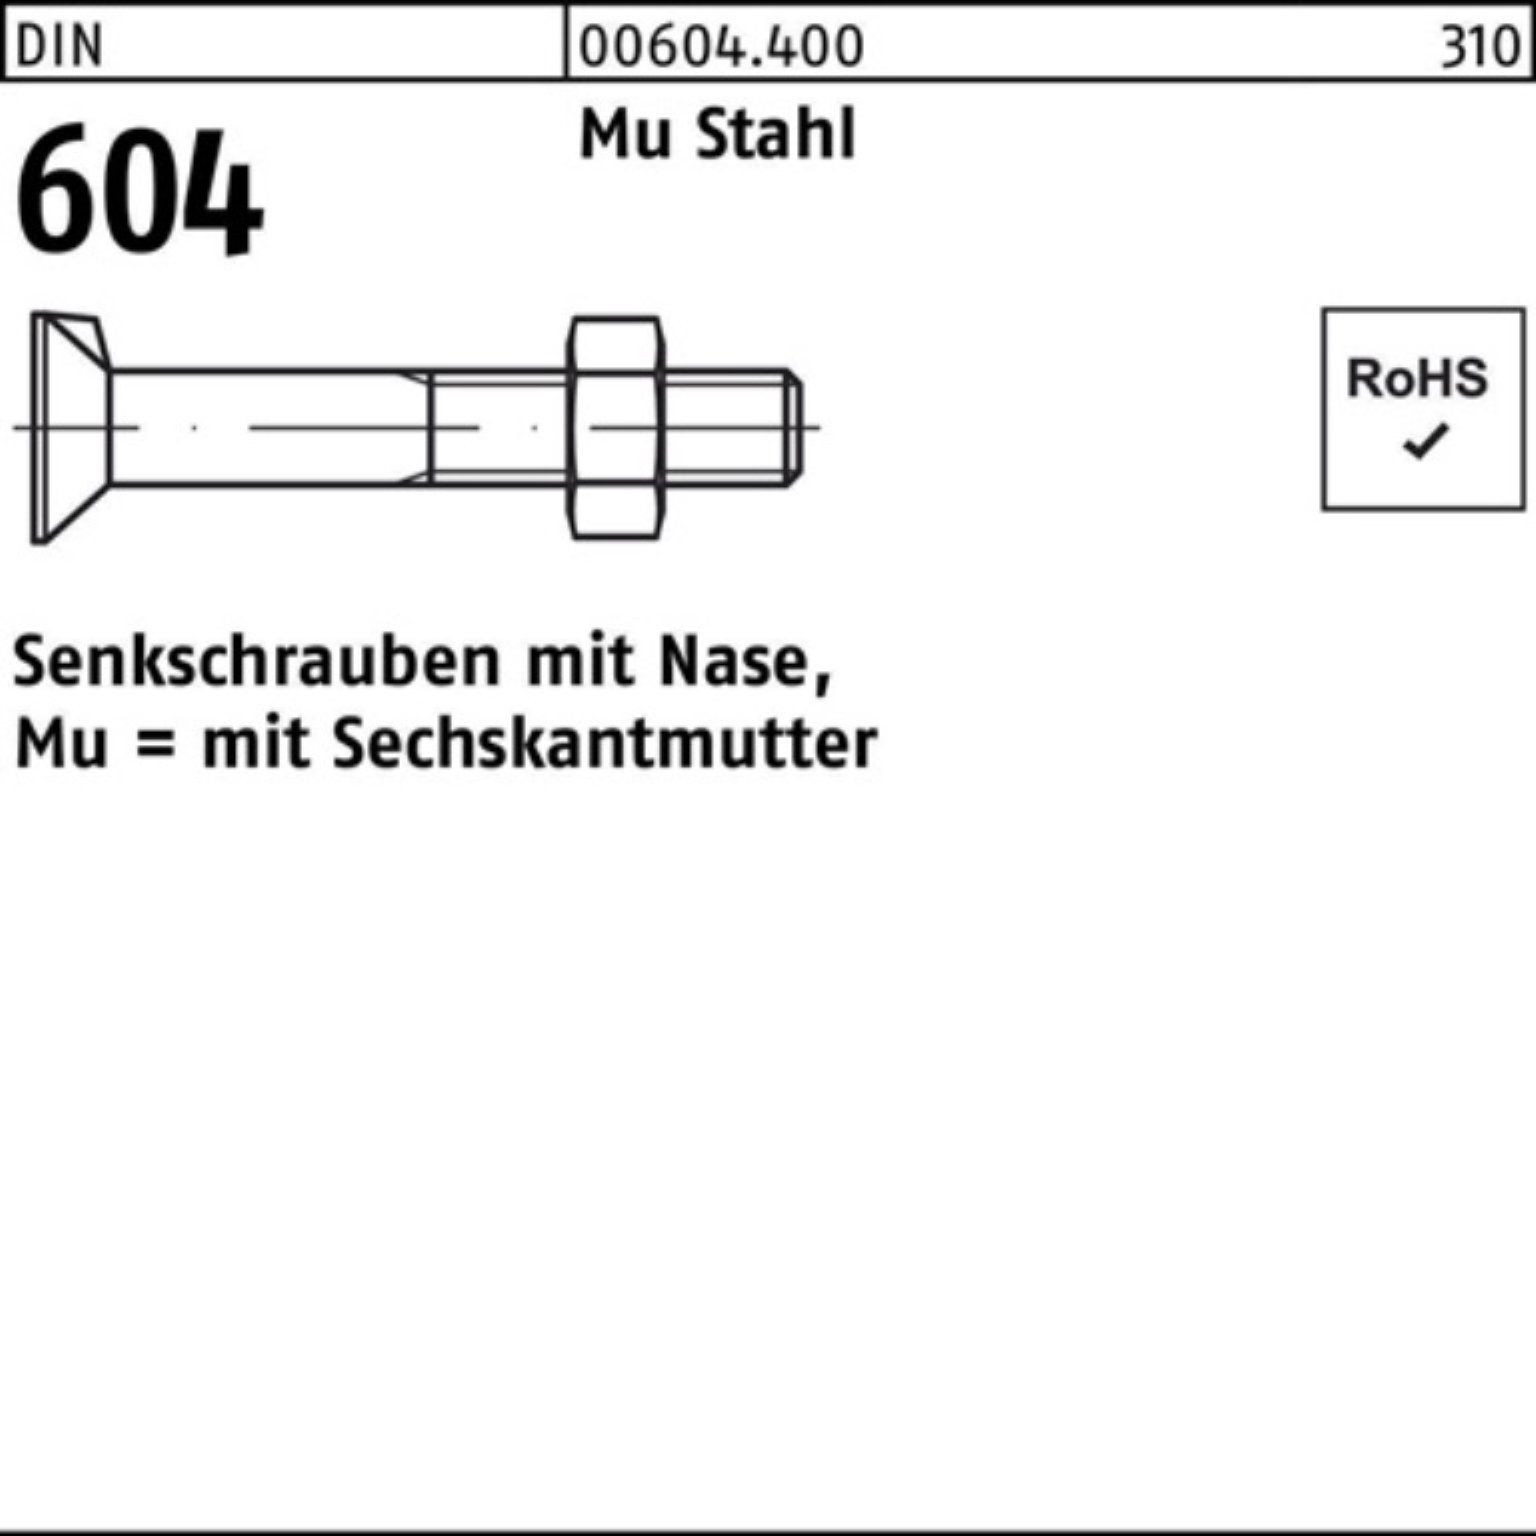 Reyher Senkschraube 200er Pack Senkschraube DIN 604 Nase/6-ktmutter M10x 25 Mu Stahl 4.6 2